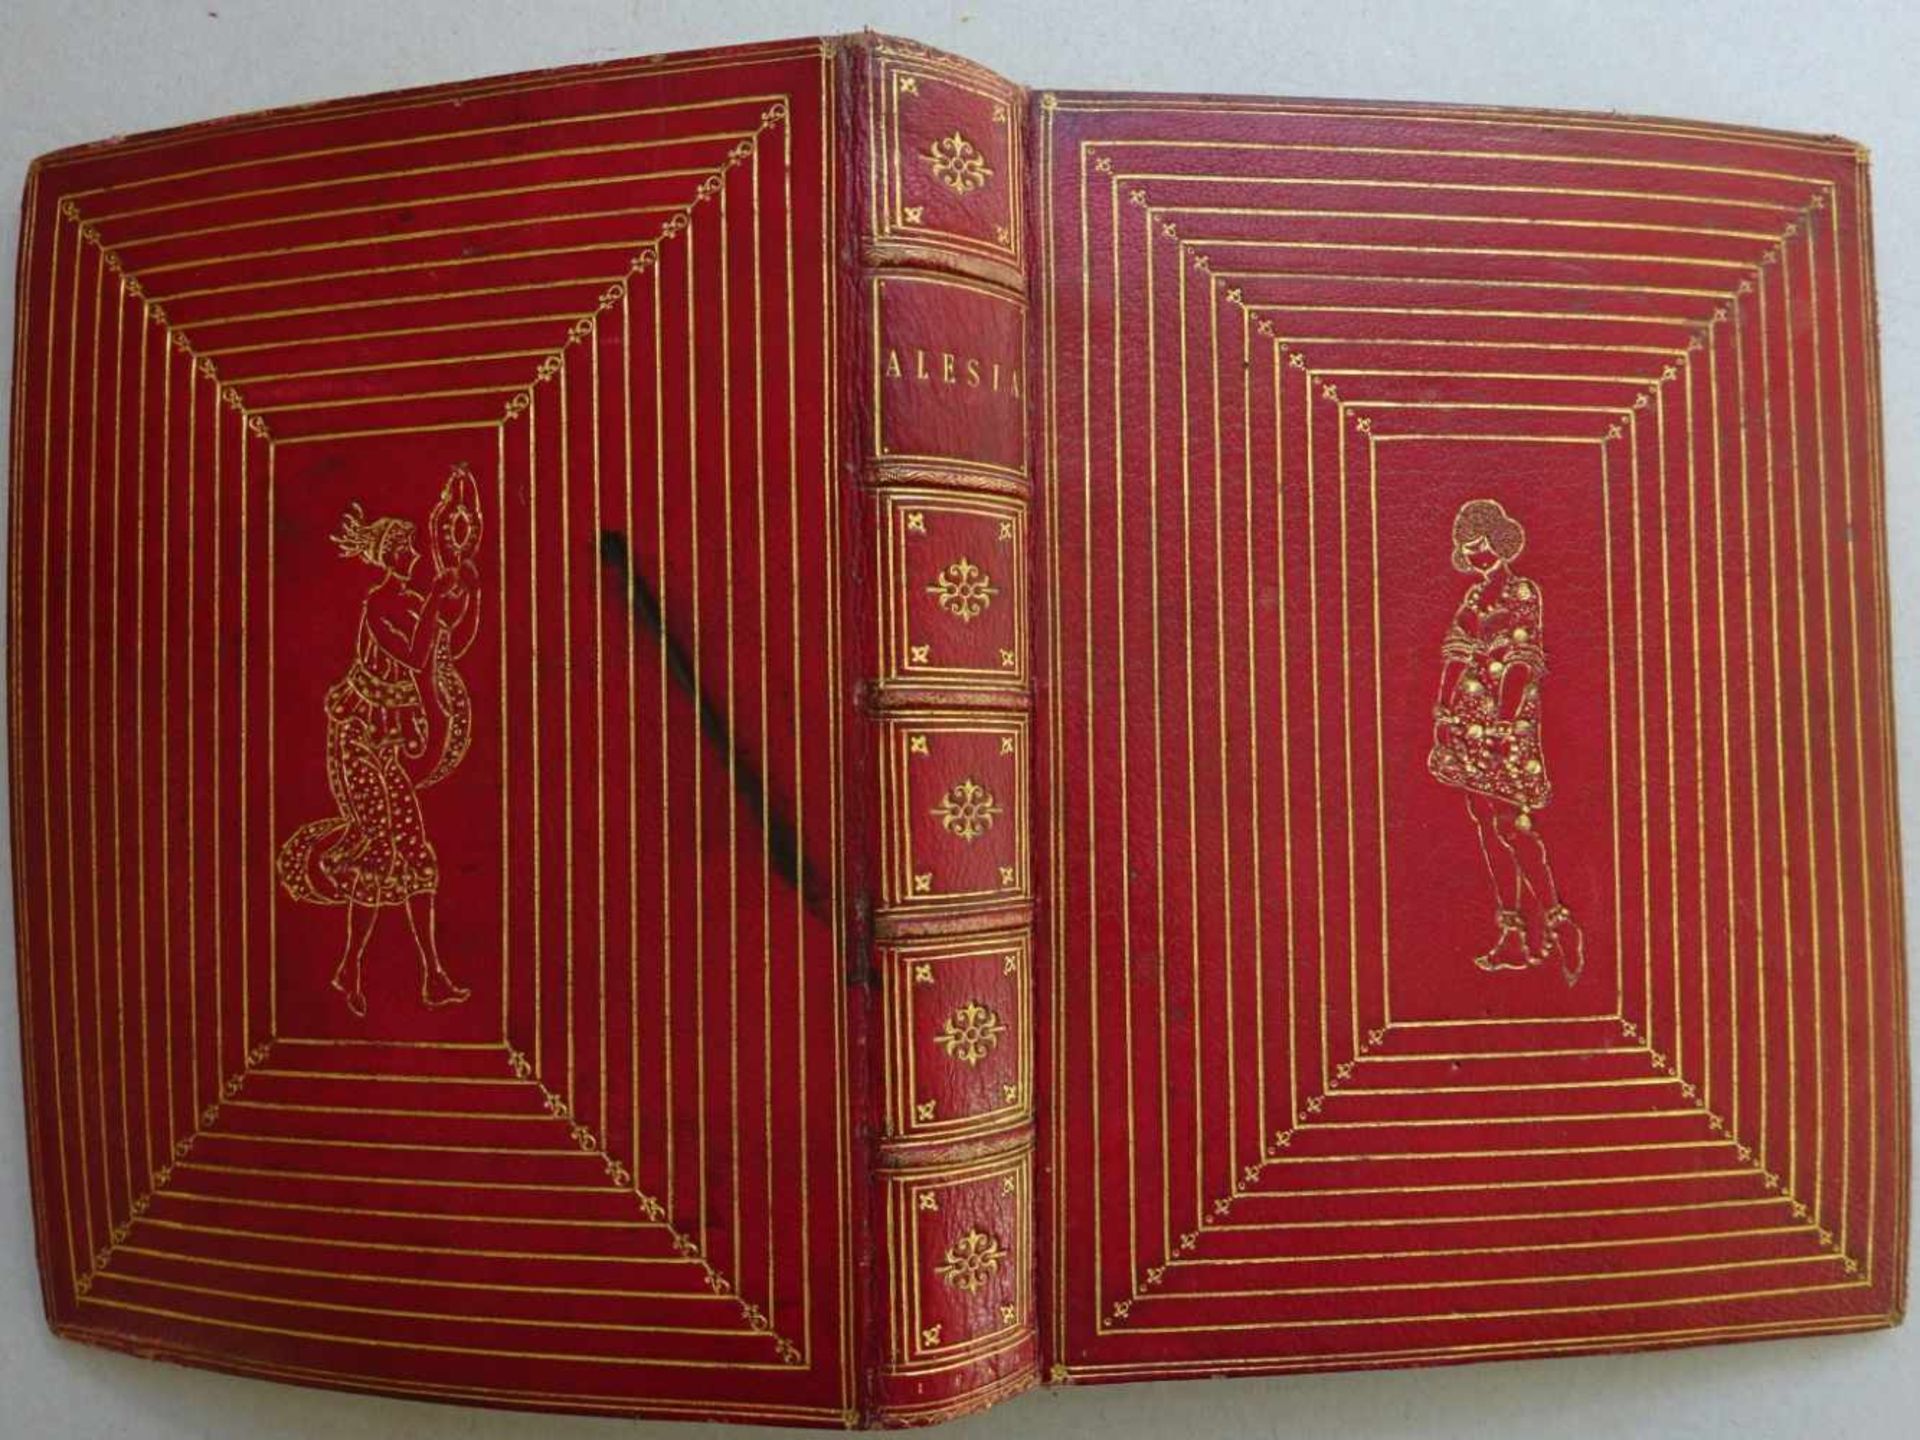 Einband.-(Journal für Literatur, Kunst, Luxus und Mode. Weimar, Bertuch, 1786). 1 w. Bl., 32 Bll.